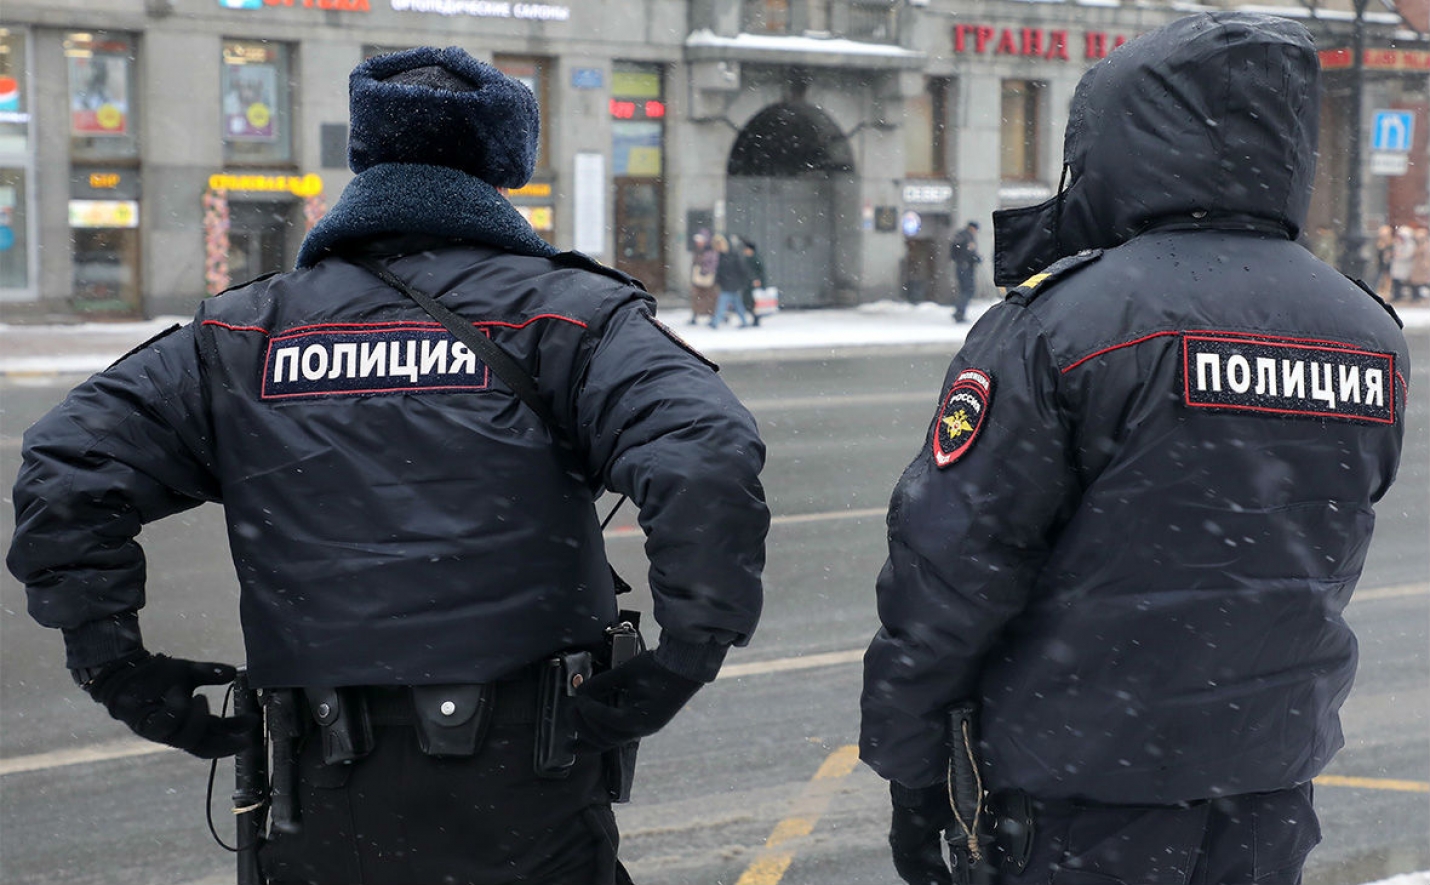 Грабители отобрали у безработного москвича сумку с 9,5 млн рублей